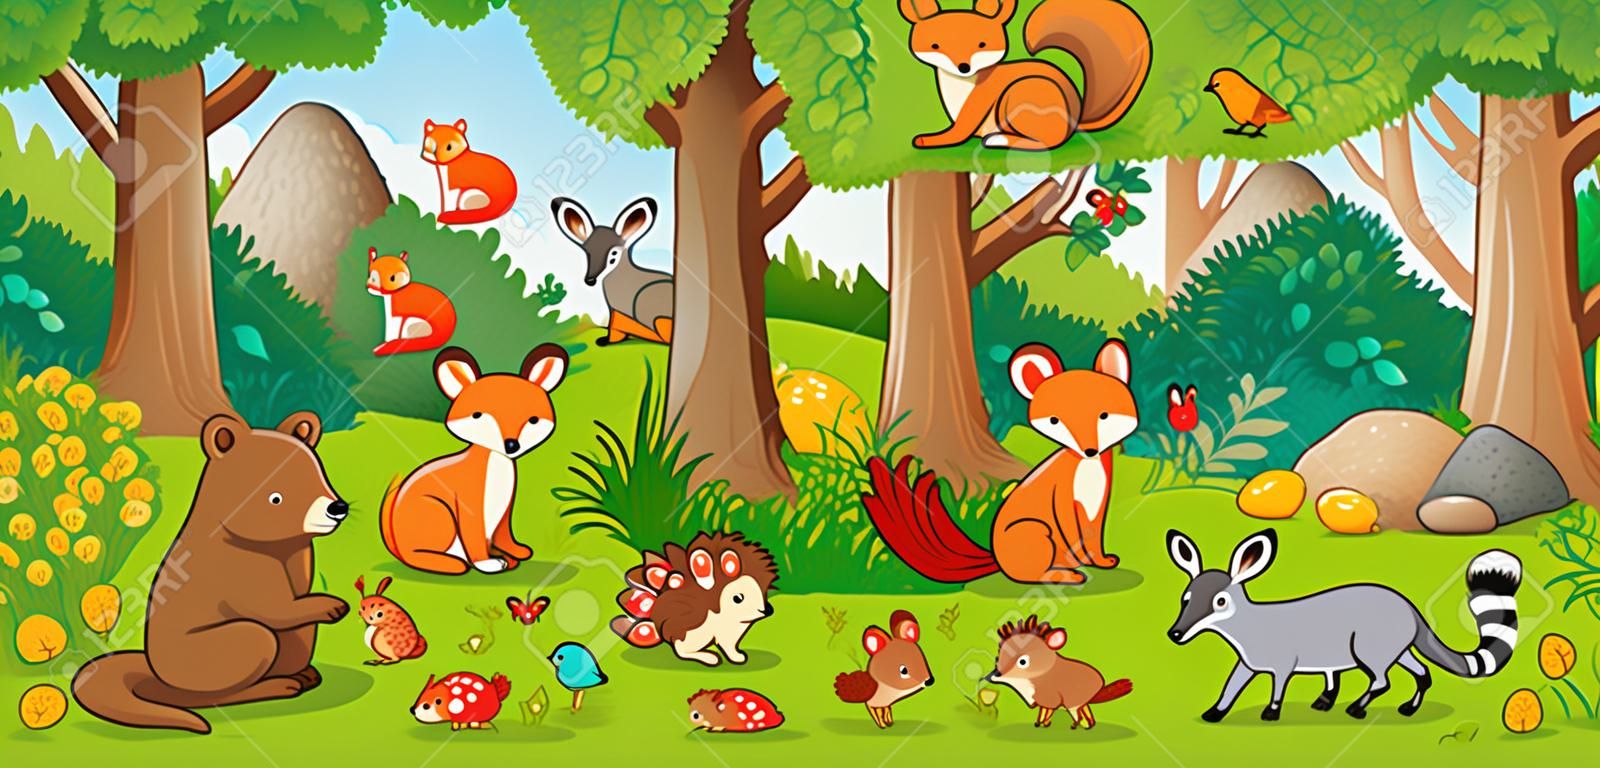 Vector illustratie met schattige bosdieren in kinderstijl. Een set van zoogdieren in het bos. Collectie in kinderstijl.